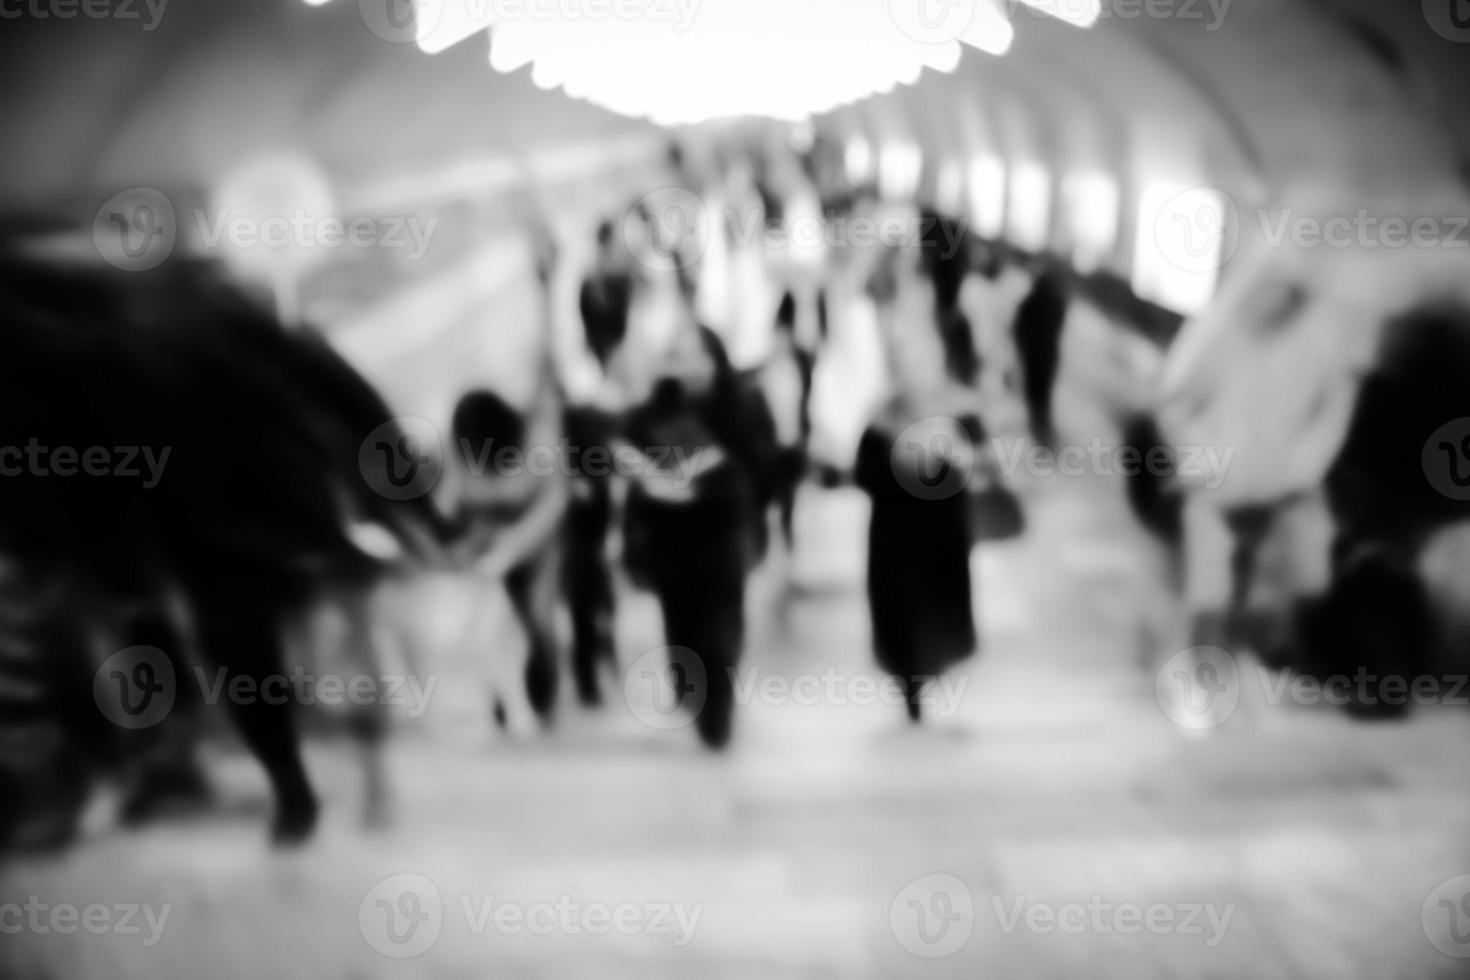 objectif flou image d'un métro avec des silhouettes de personnes en mouvement. photo